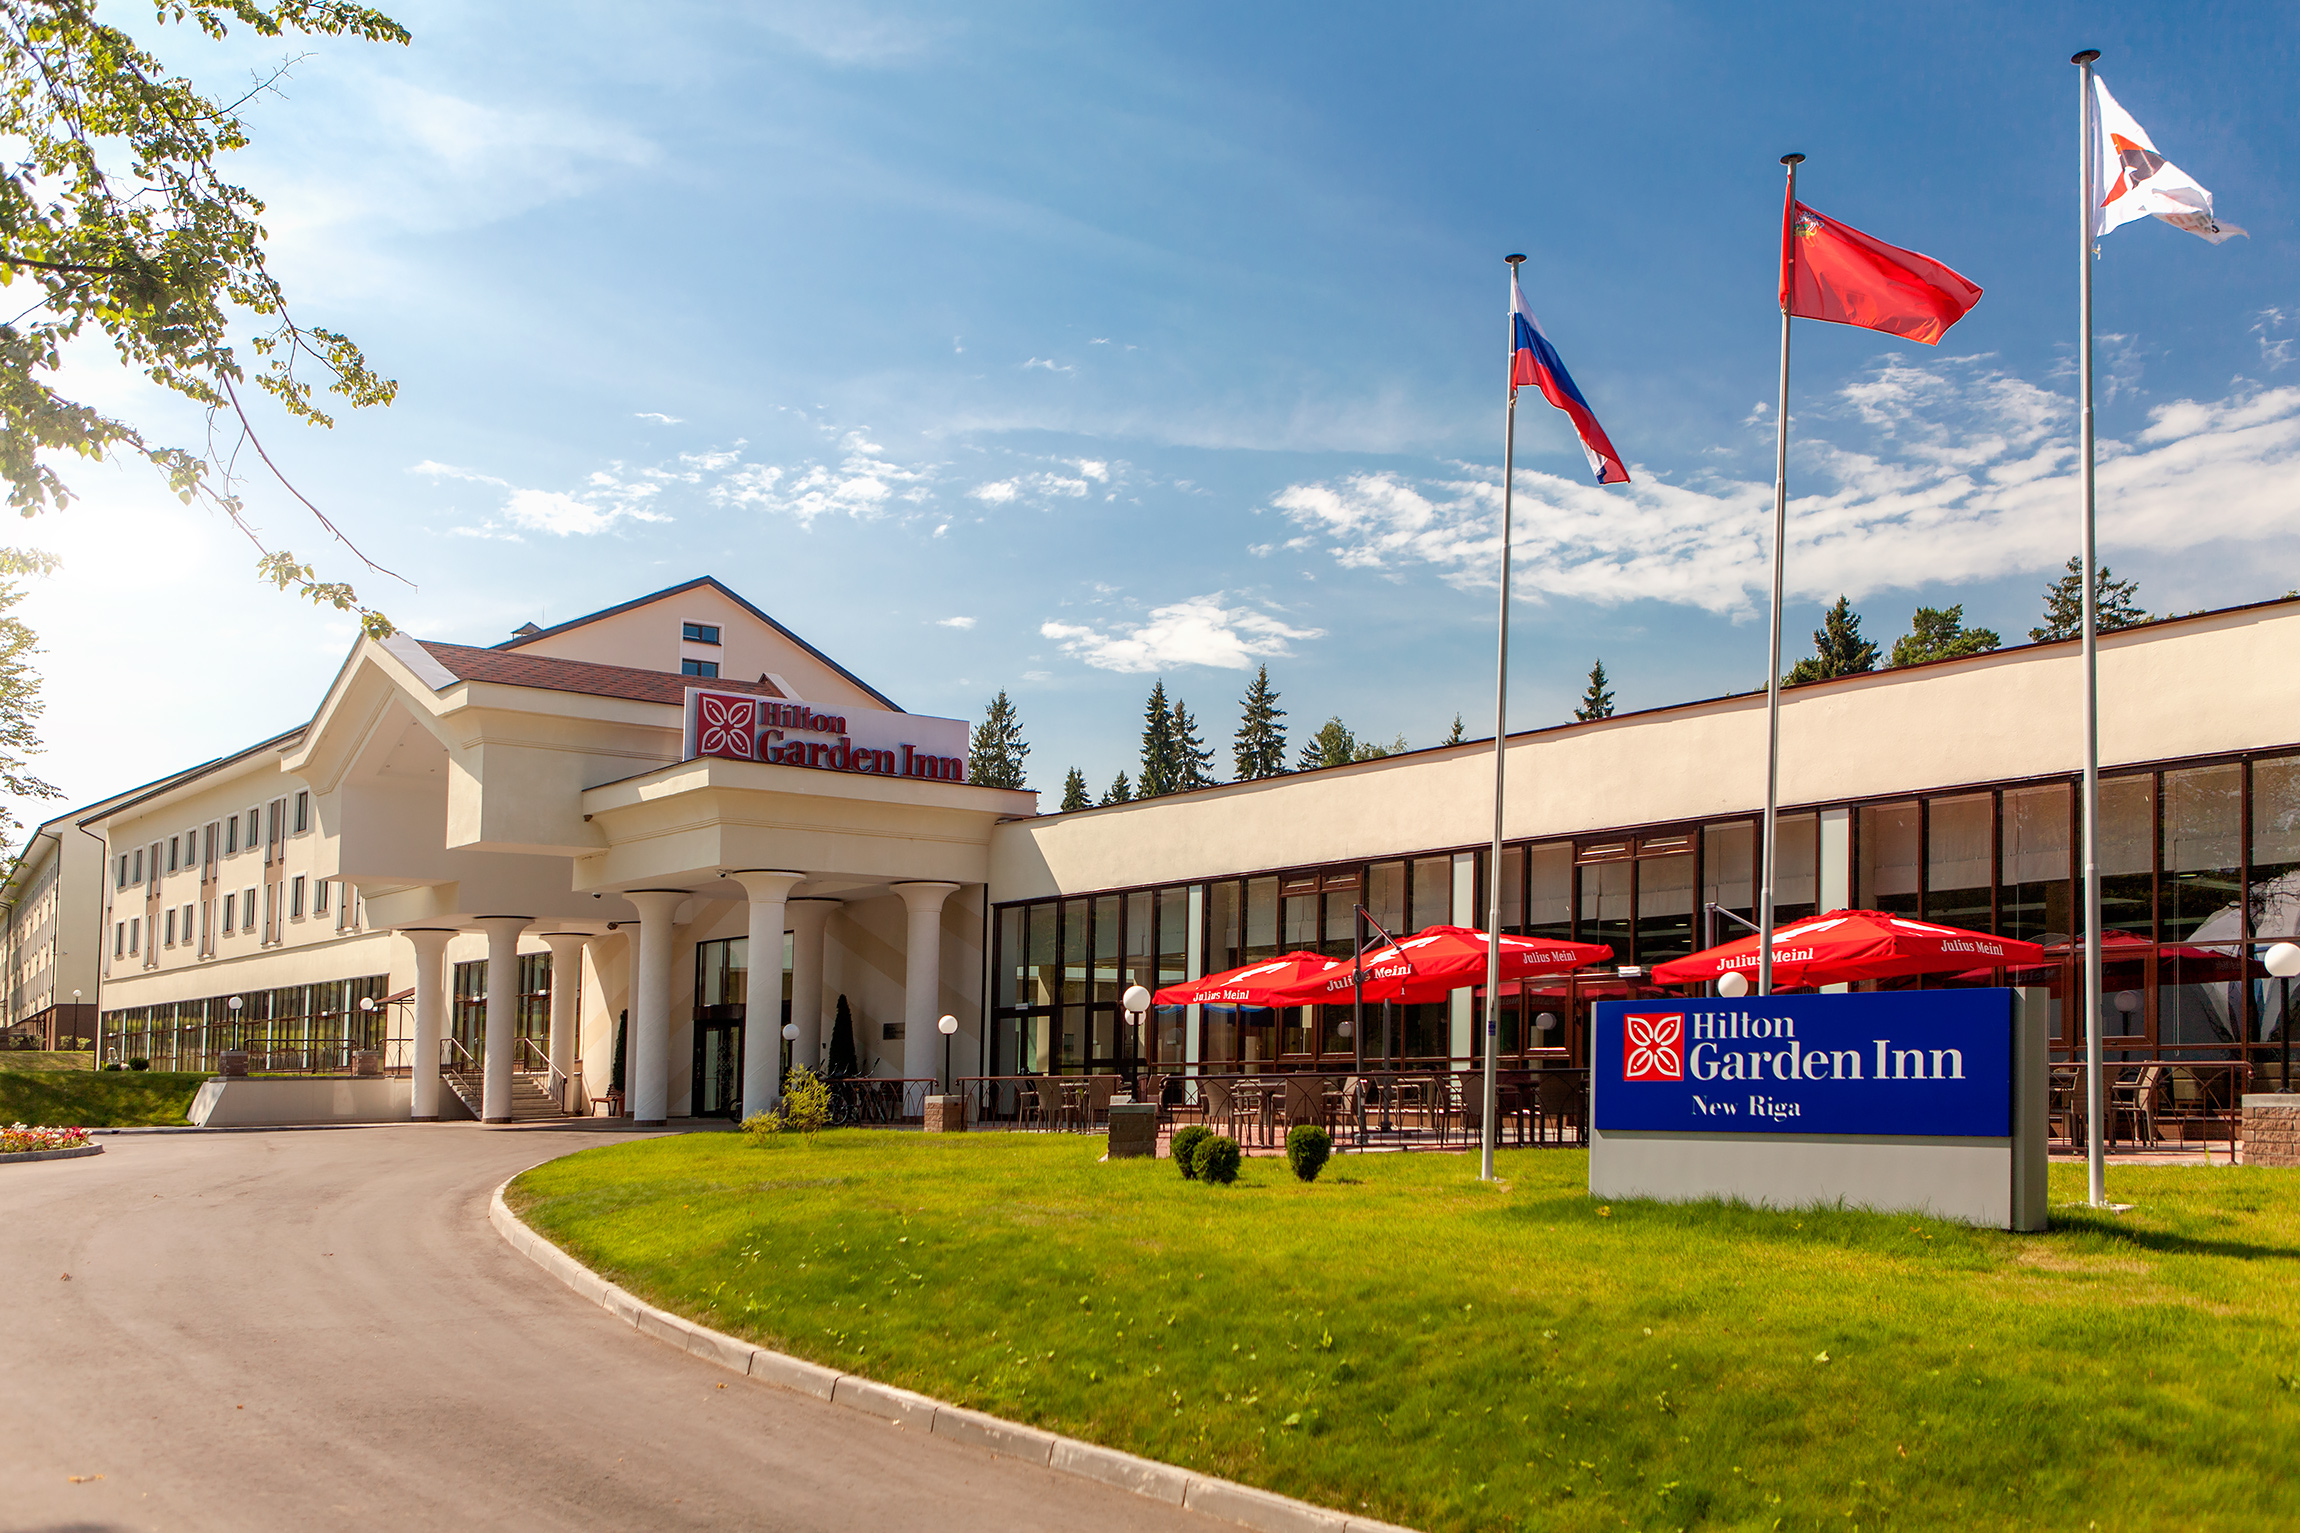 Готель Hilton Garden Inn Moscow New Riga — ваш літній відпочинок в ідеальному виконанні